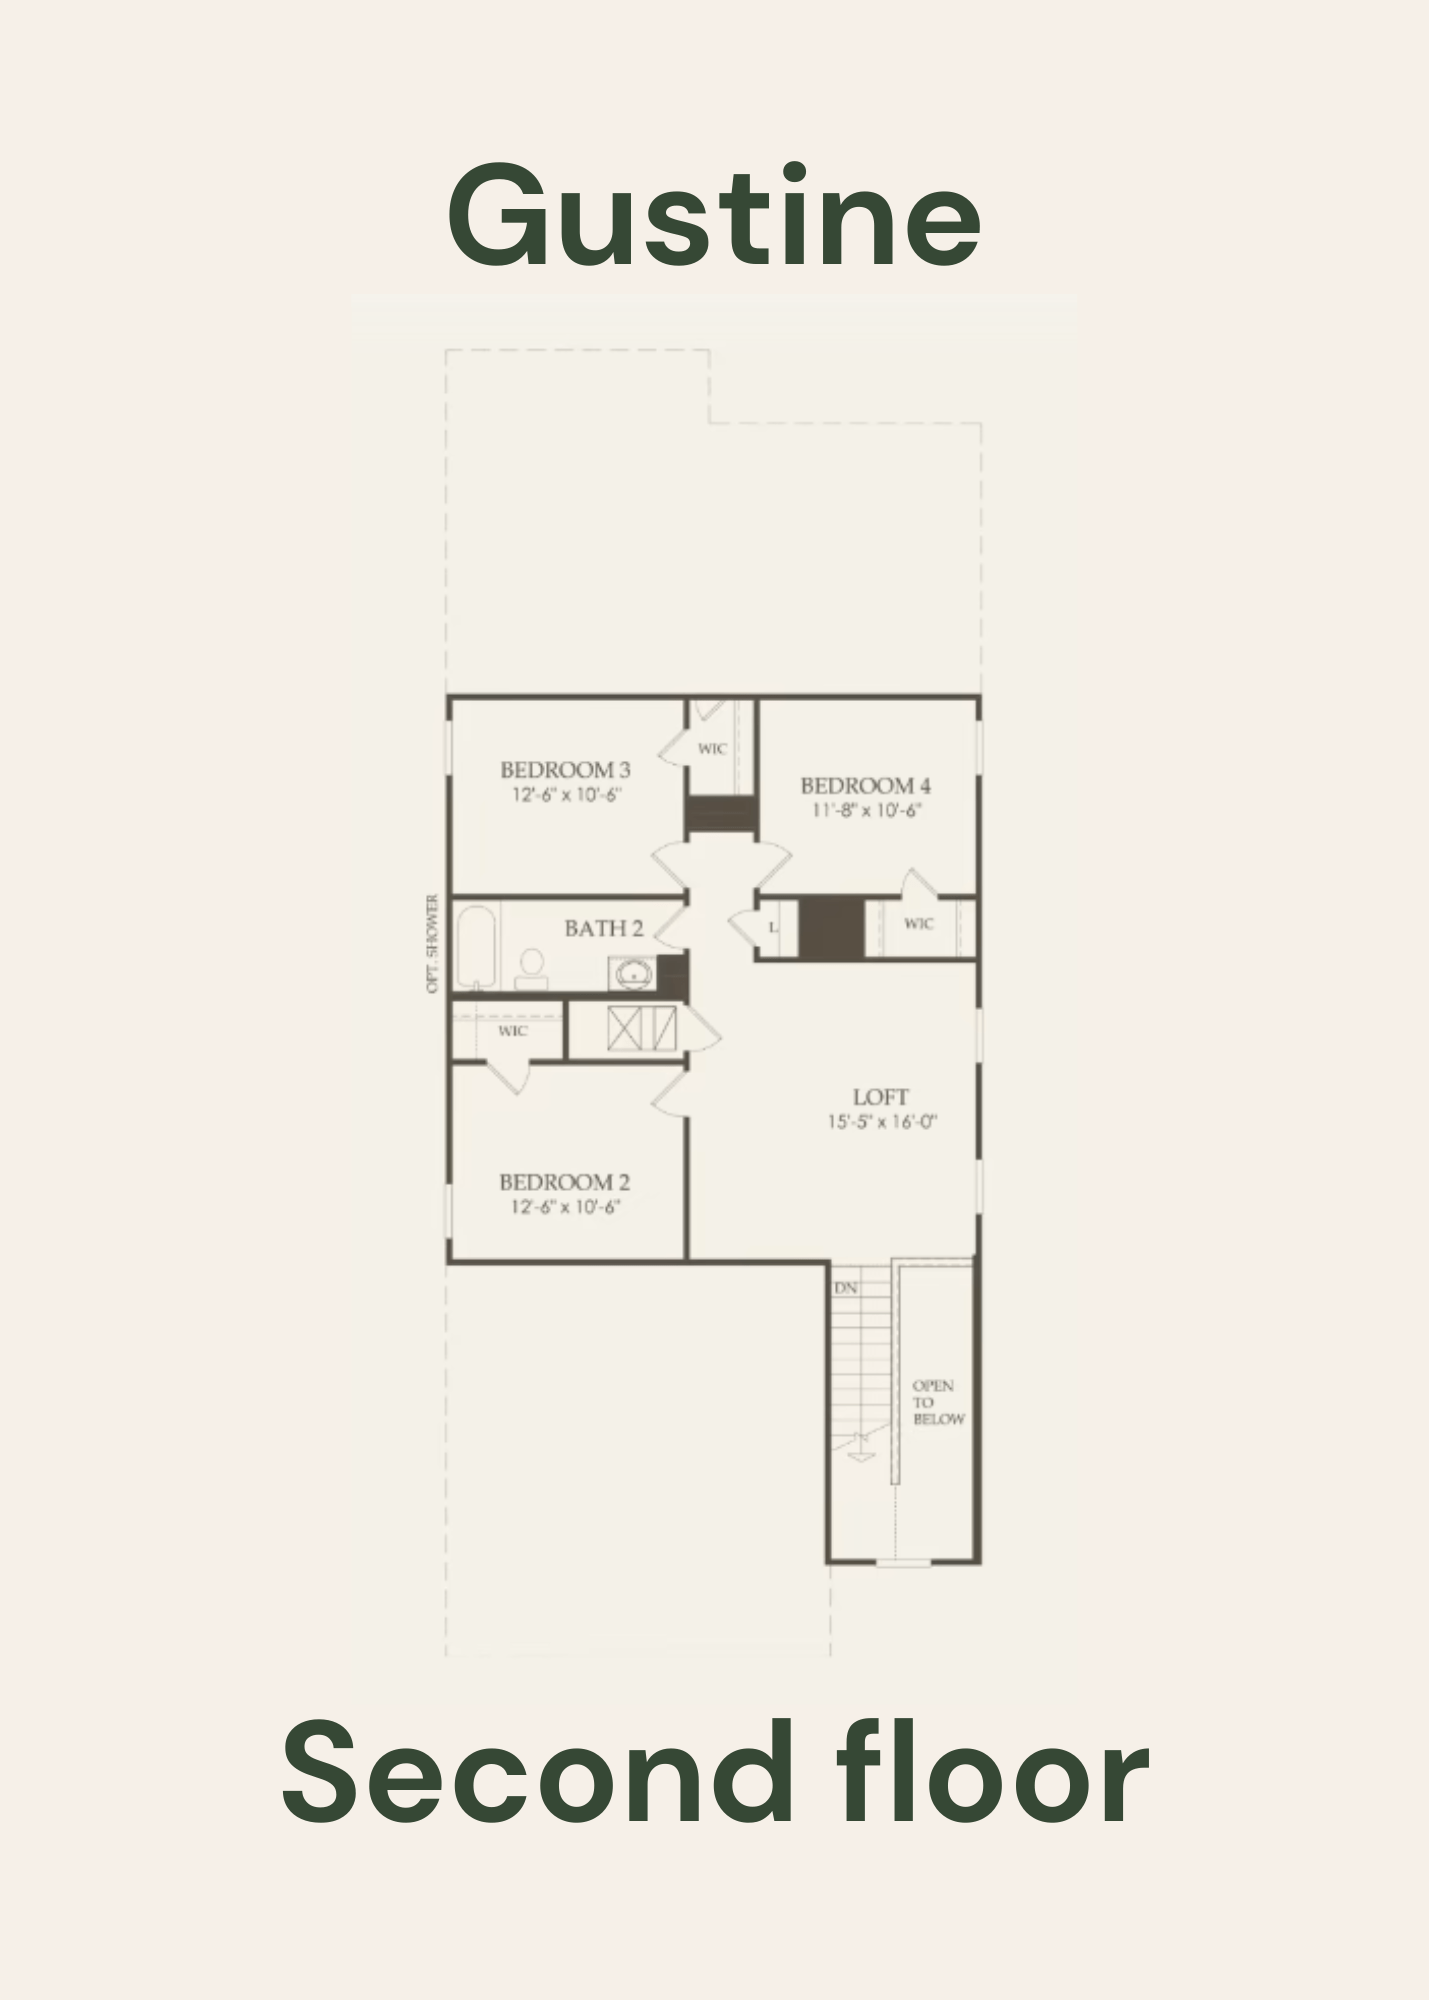 Gustine Second Floor - Floor Plan by Centex Homes